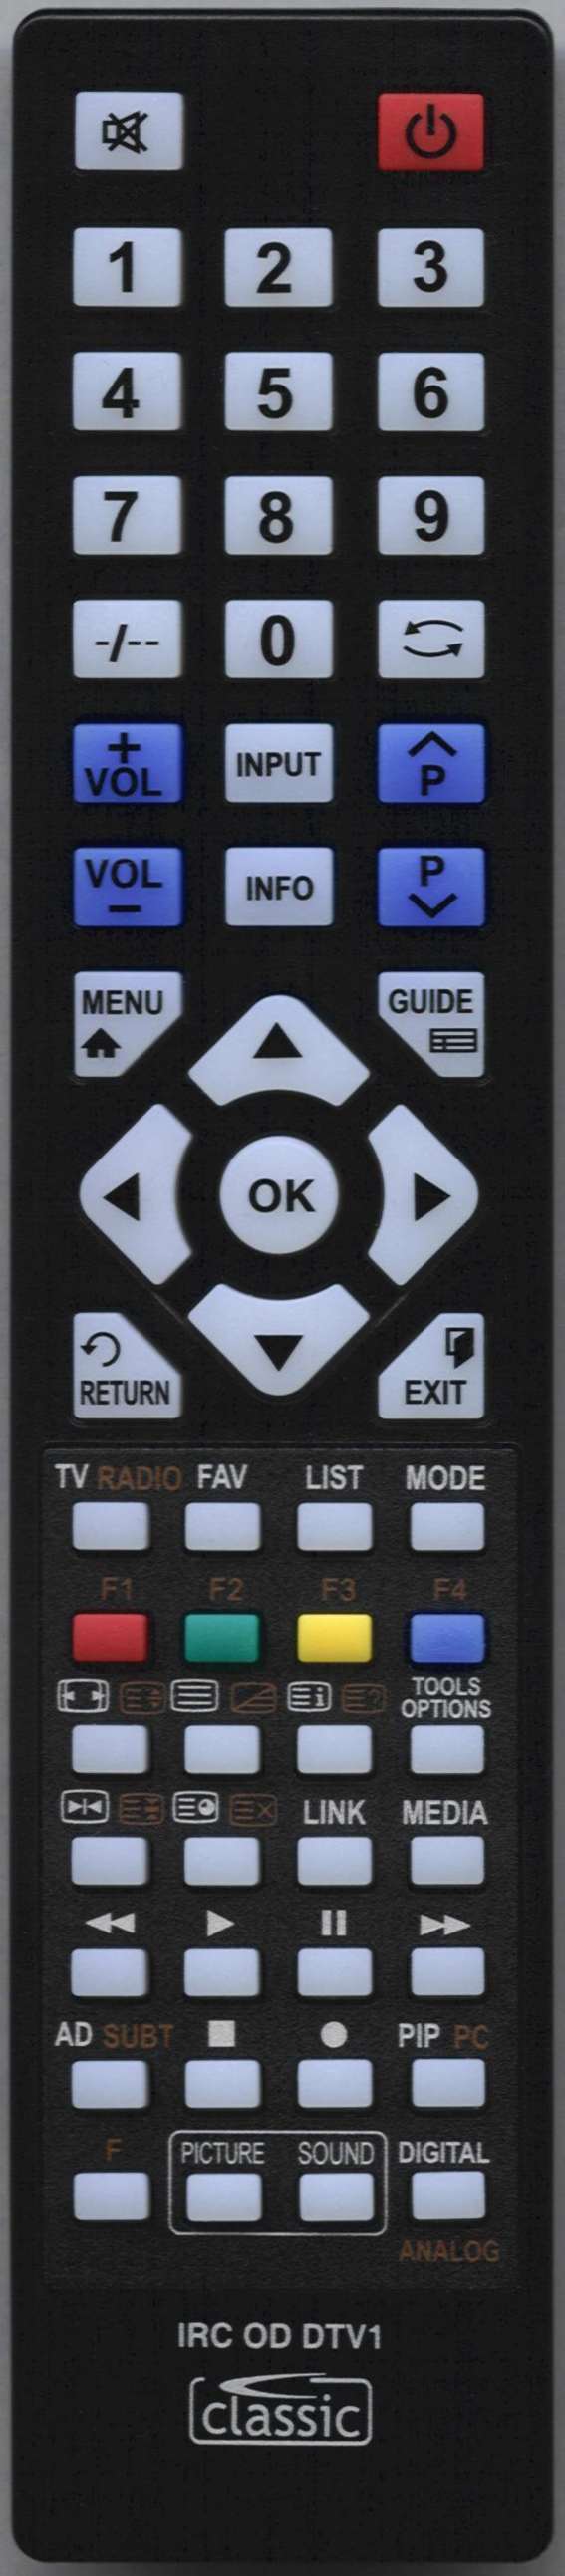 Sony KDL-42W706B Remote Control Alternative